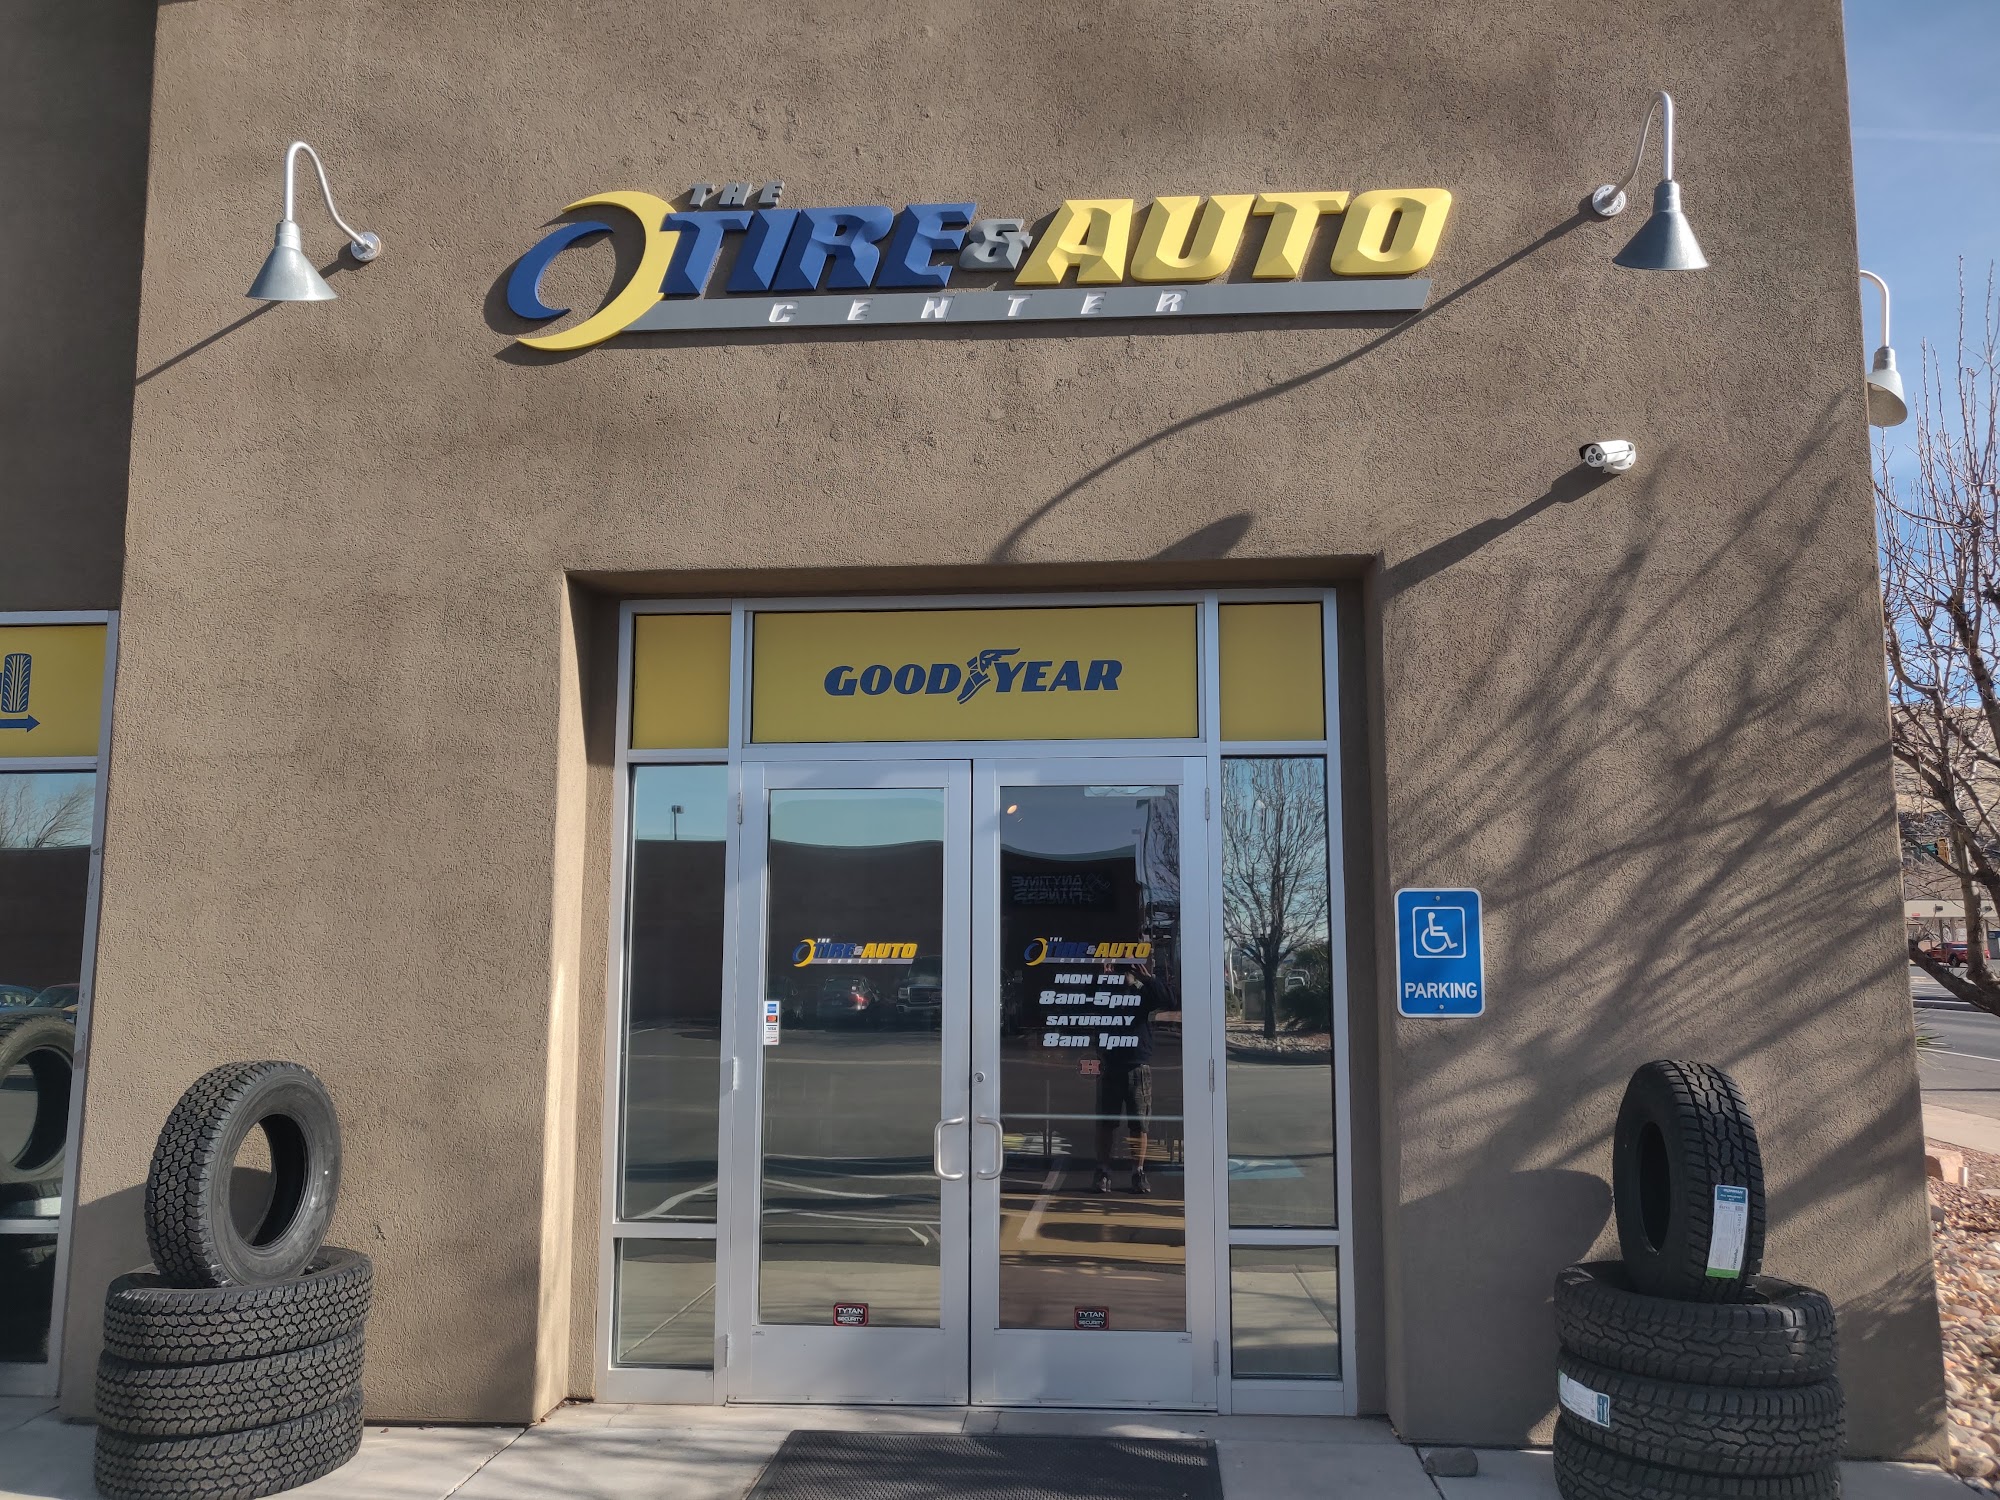 The Tire & Auto Center